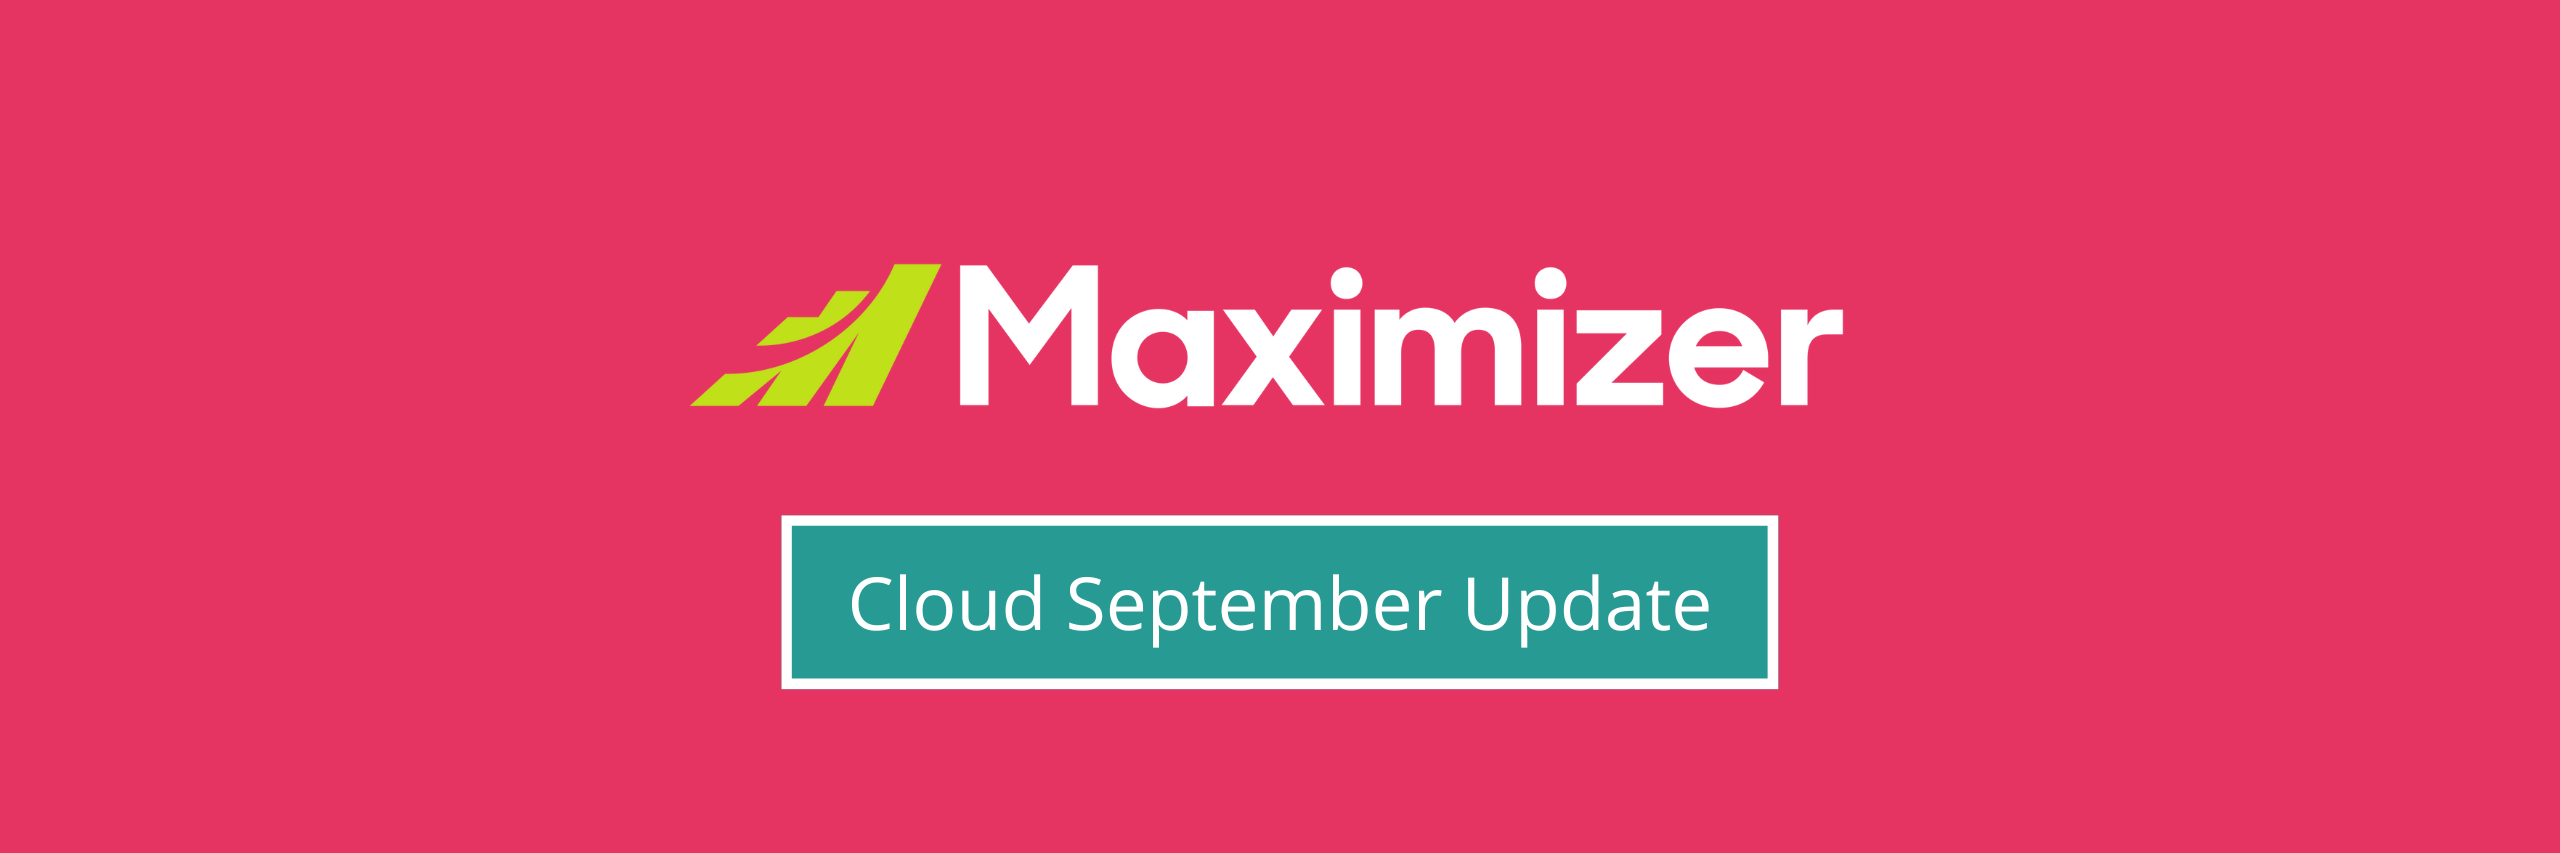 Maximizer Cloud September Update